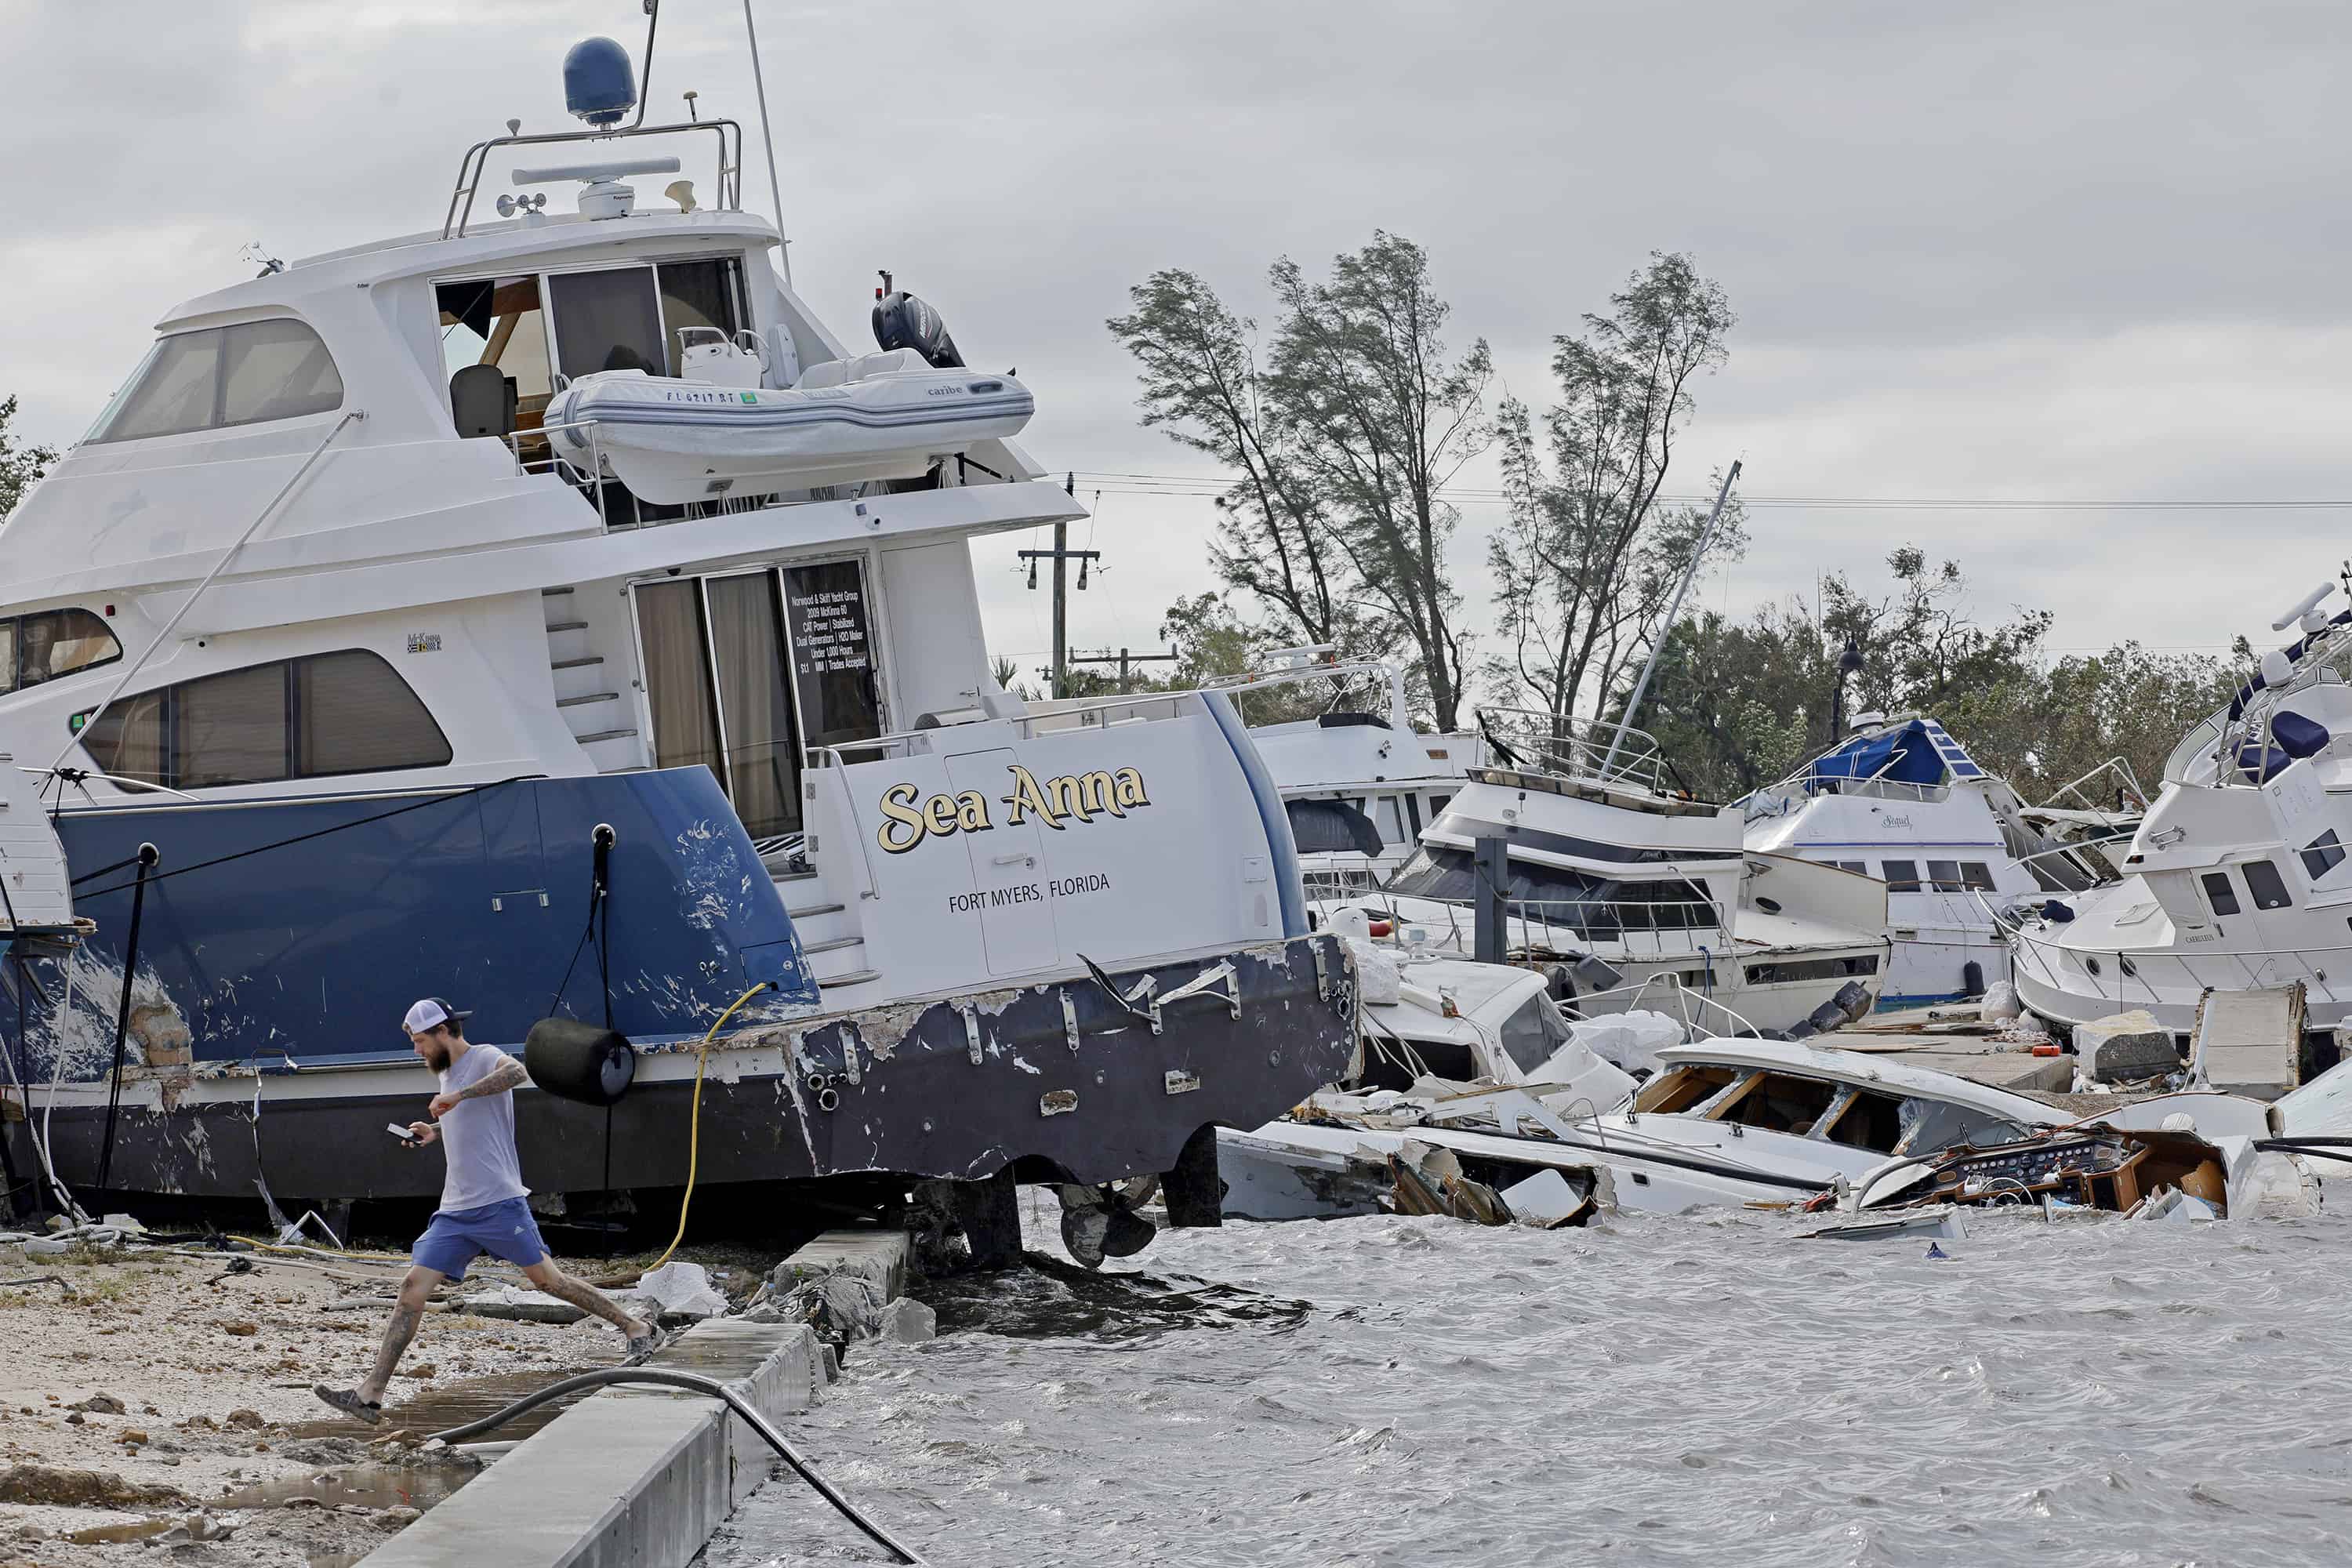 Joe Dalton, de vacaciones desde Cleveland, Ohio, revisa los botes varados en Fort Myers Wharf a lo largo del río Caloosahatchee el jueves 29 de septiembre de 2022 en Fort Myers, Florida, luego del huracán Ian.